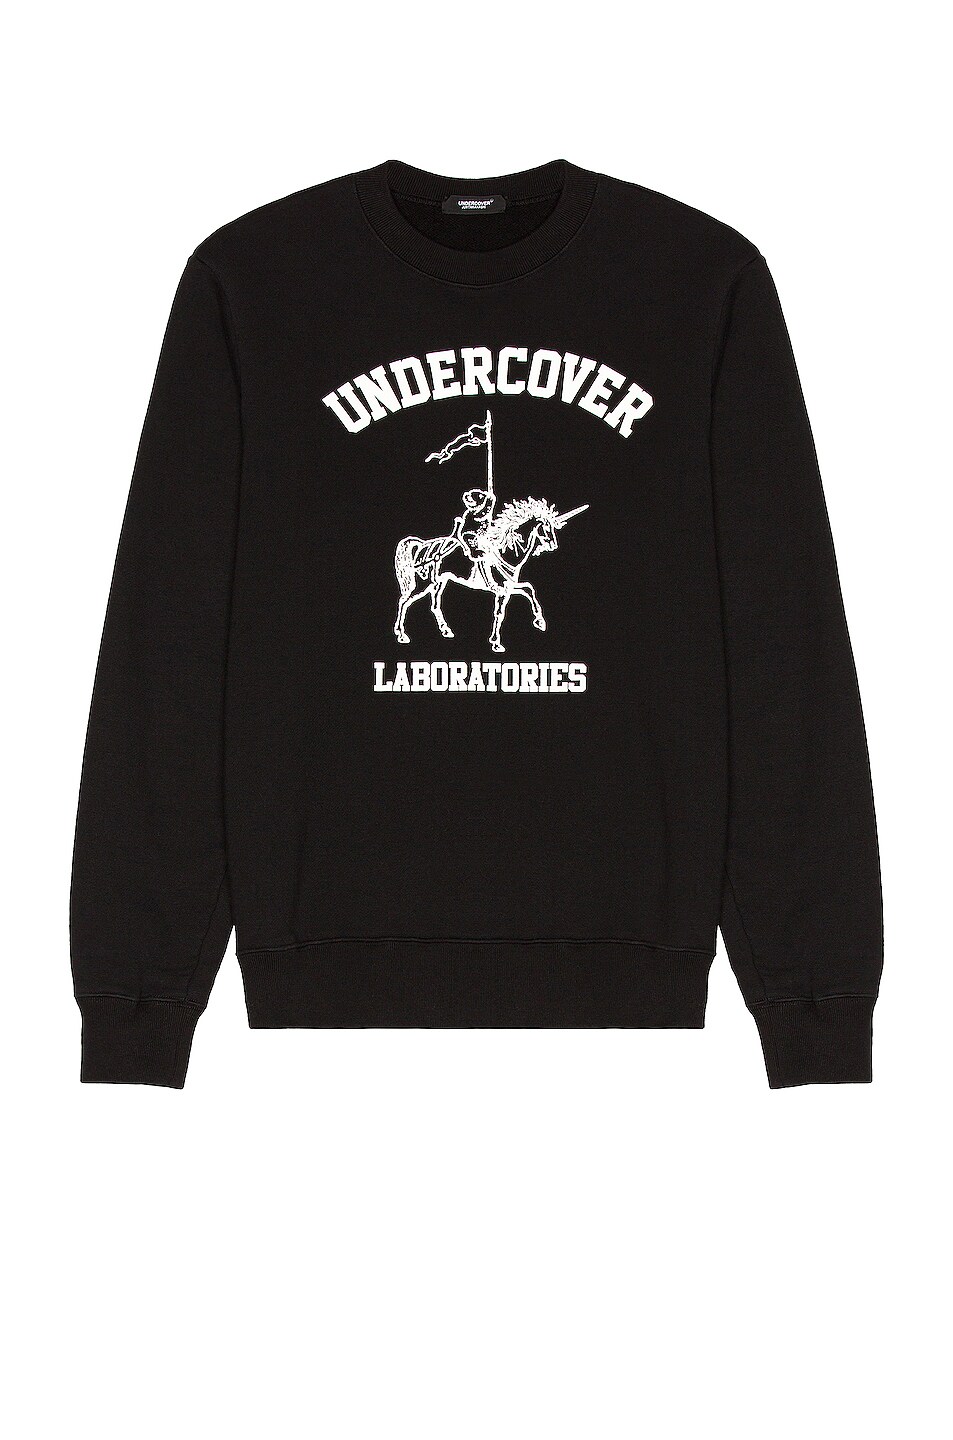 Image 1 of Undercover Laboratories Sweatshirt in Black